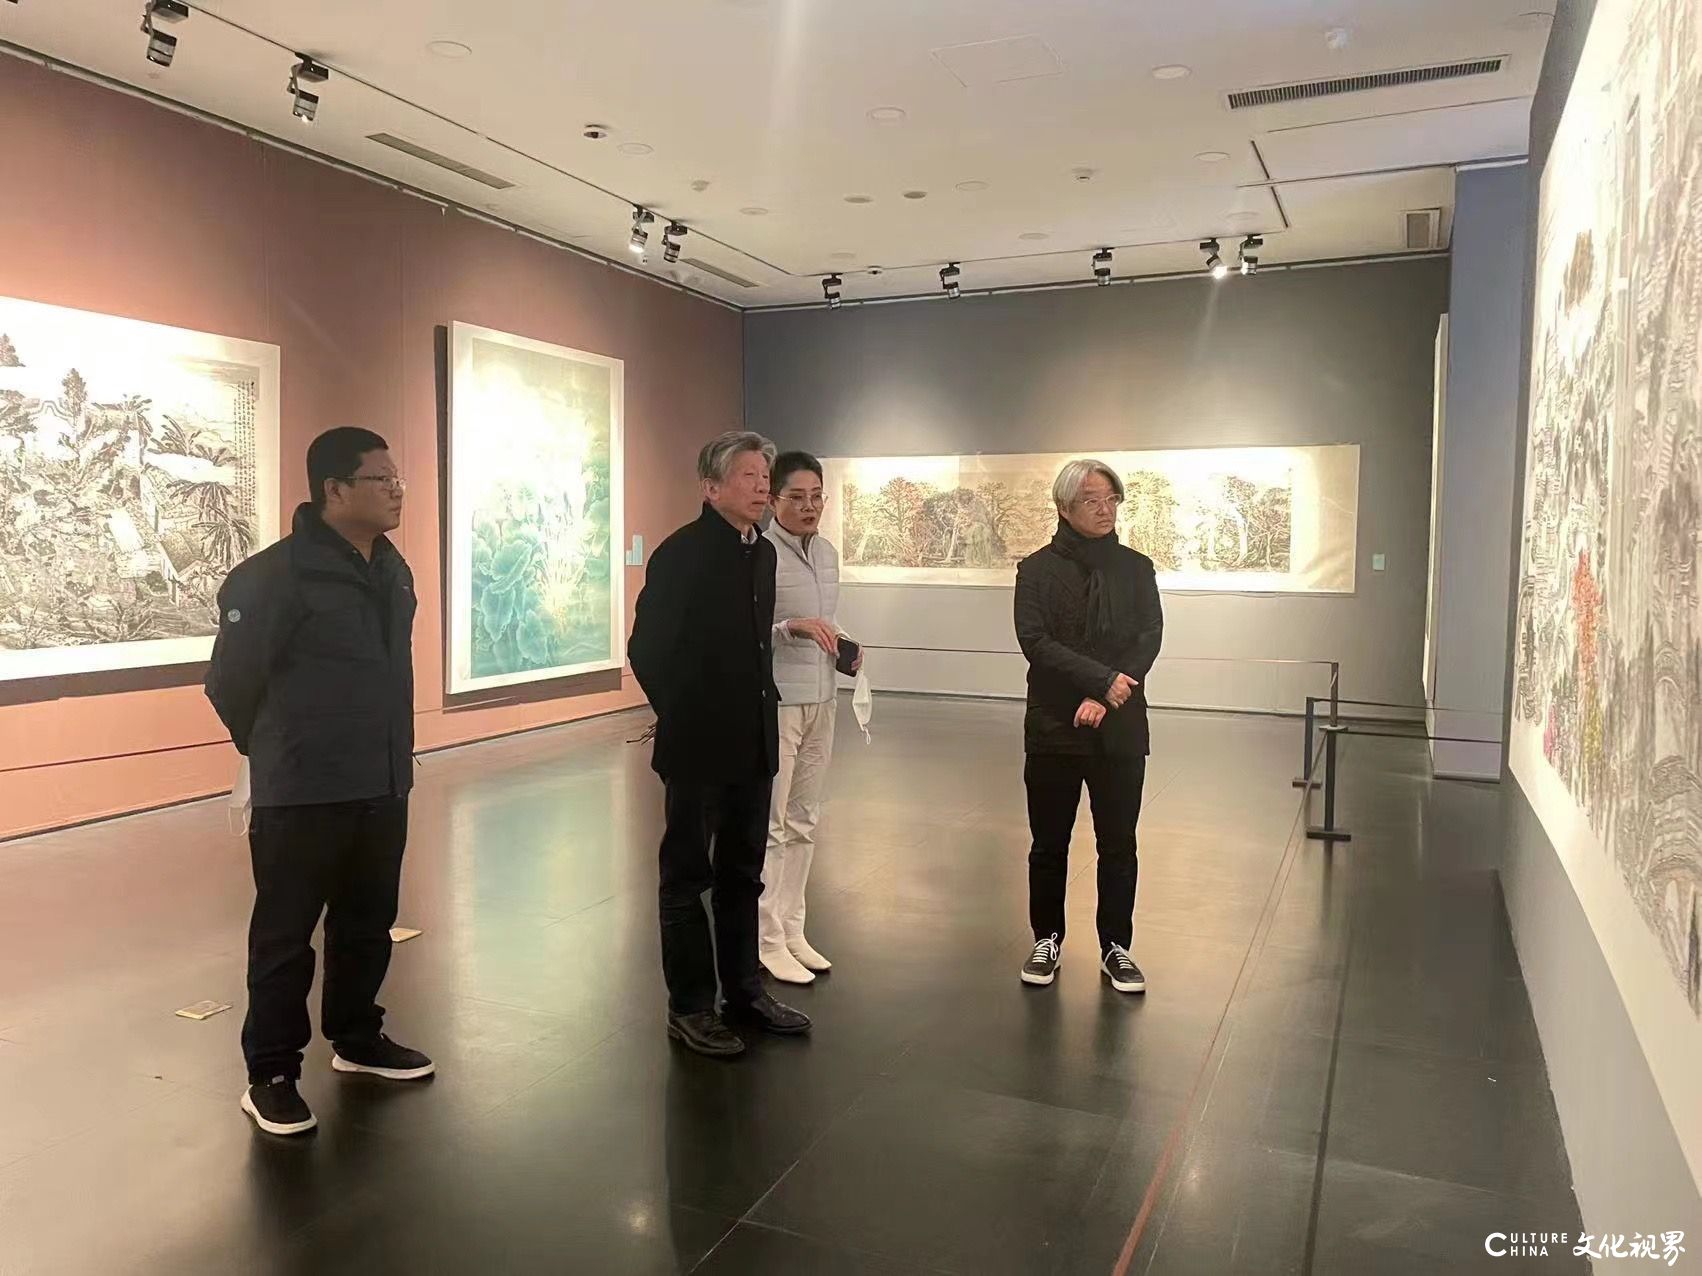 “溢彩流光写风情——岭南水乡画派50周年纪念展”研讨会在北京举办